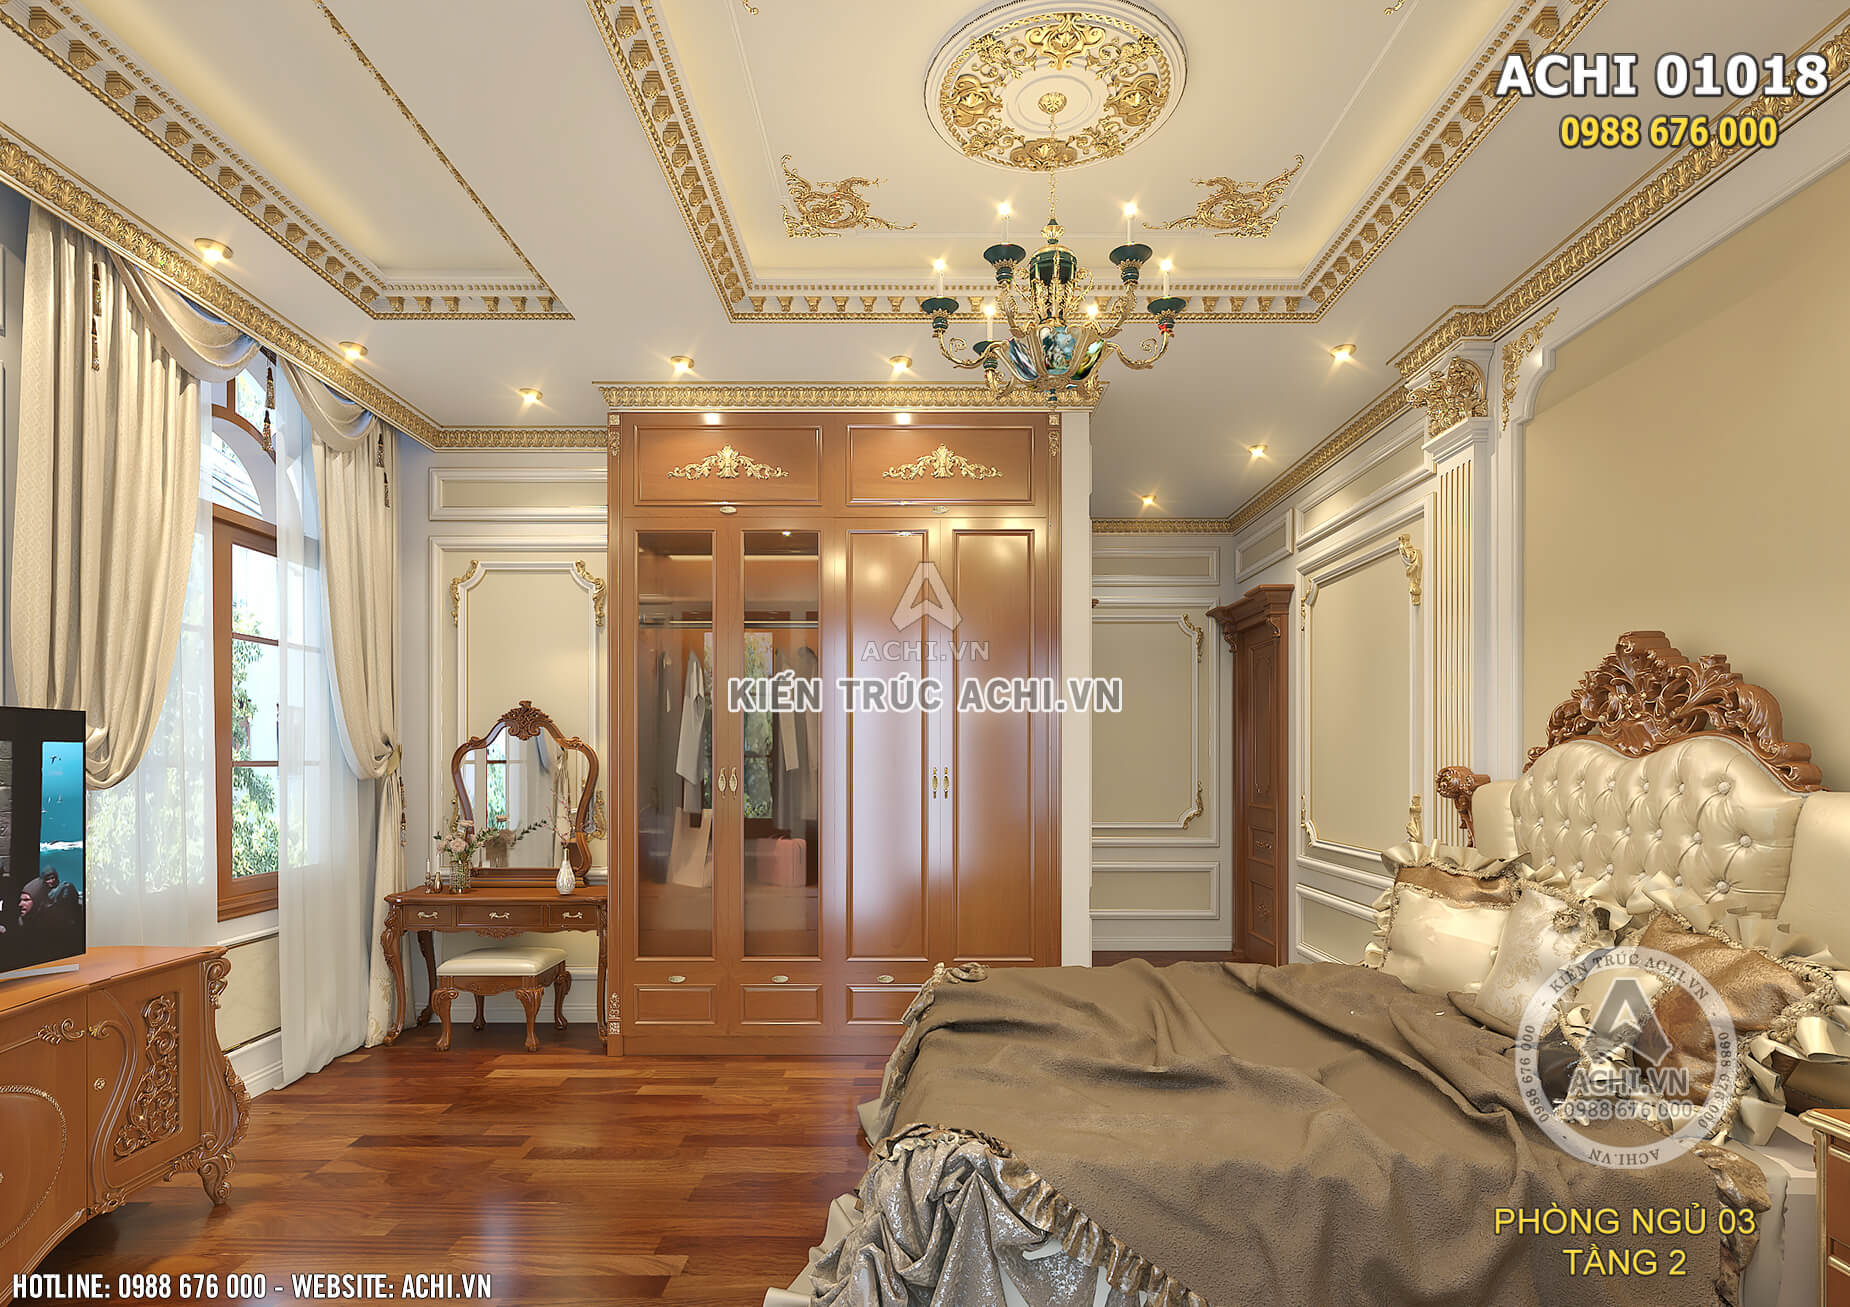 Nội thất phòng ngủ theo phong cách tân cổ điển được lát gỗ tự nhiên cao cấp vô cùng ấm áp và đẳng cấp